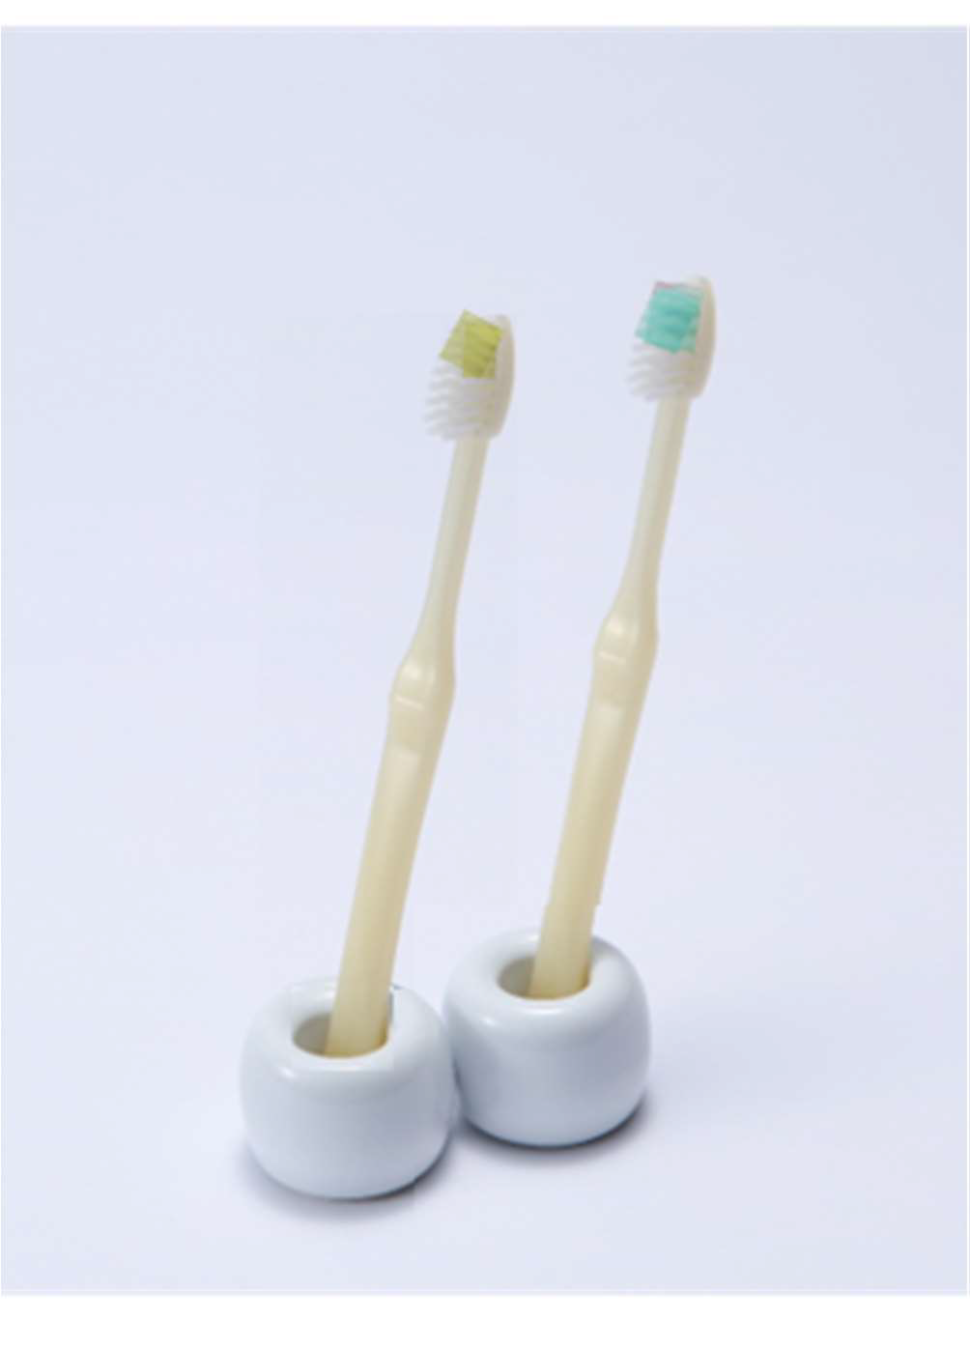 グリーンプラネットを柄に使用した歯ブラシ